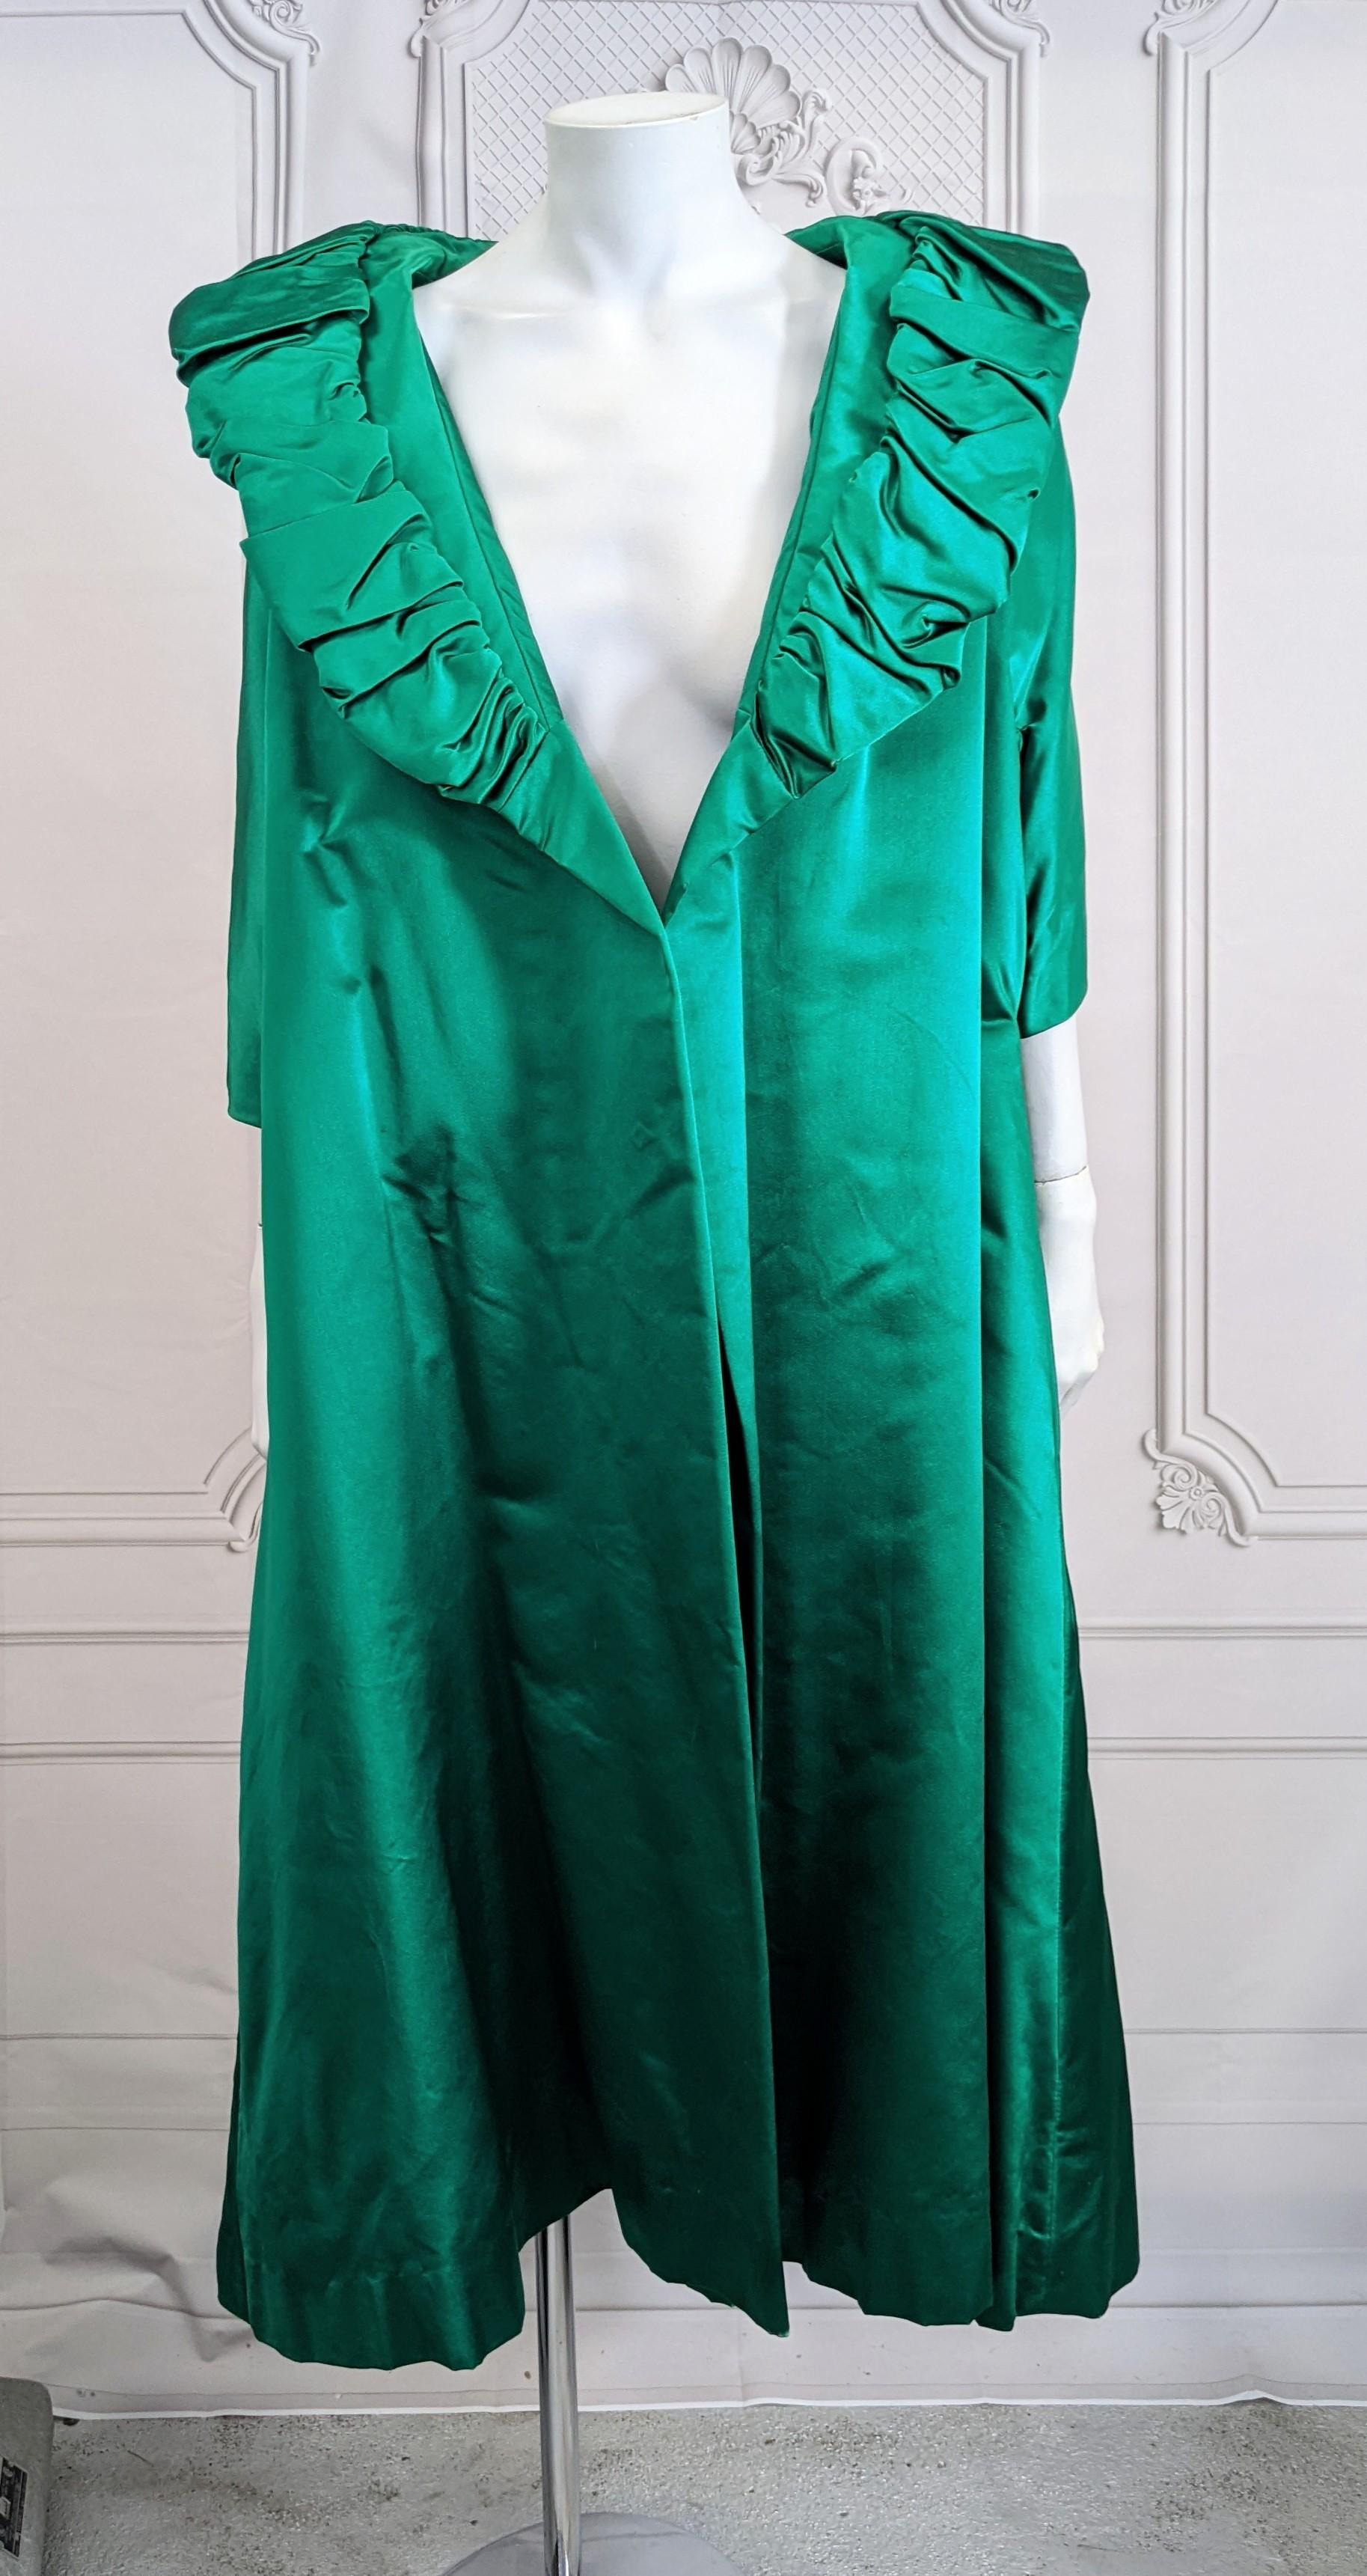 Dramatischer Opernmantel aus smaragdfarbenem Seidensatin aus den 1950er Jahren, der sowohl offen als auch umklammert getragen werden kann. Keine Schließungen. Schwerer Satin mit steifer Unterlage. Sehr weit geschnitten in einer quadratischen Form